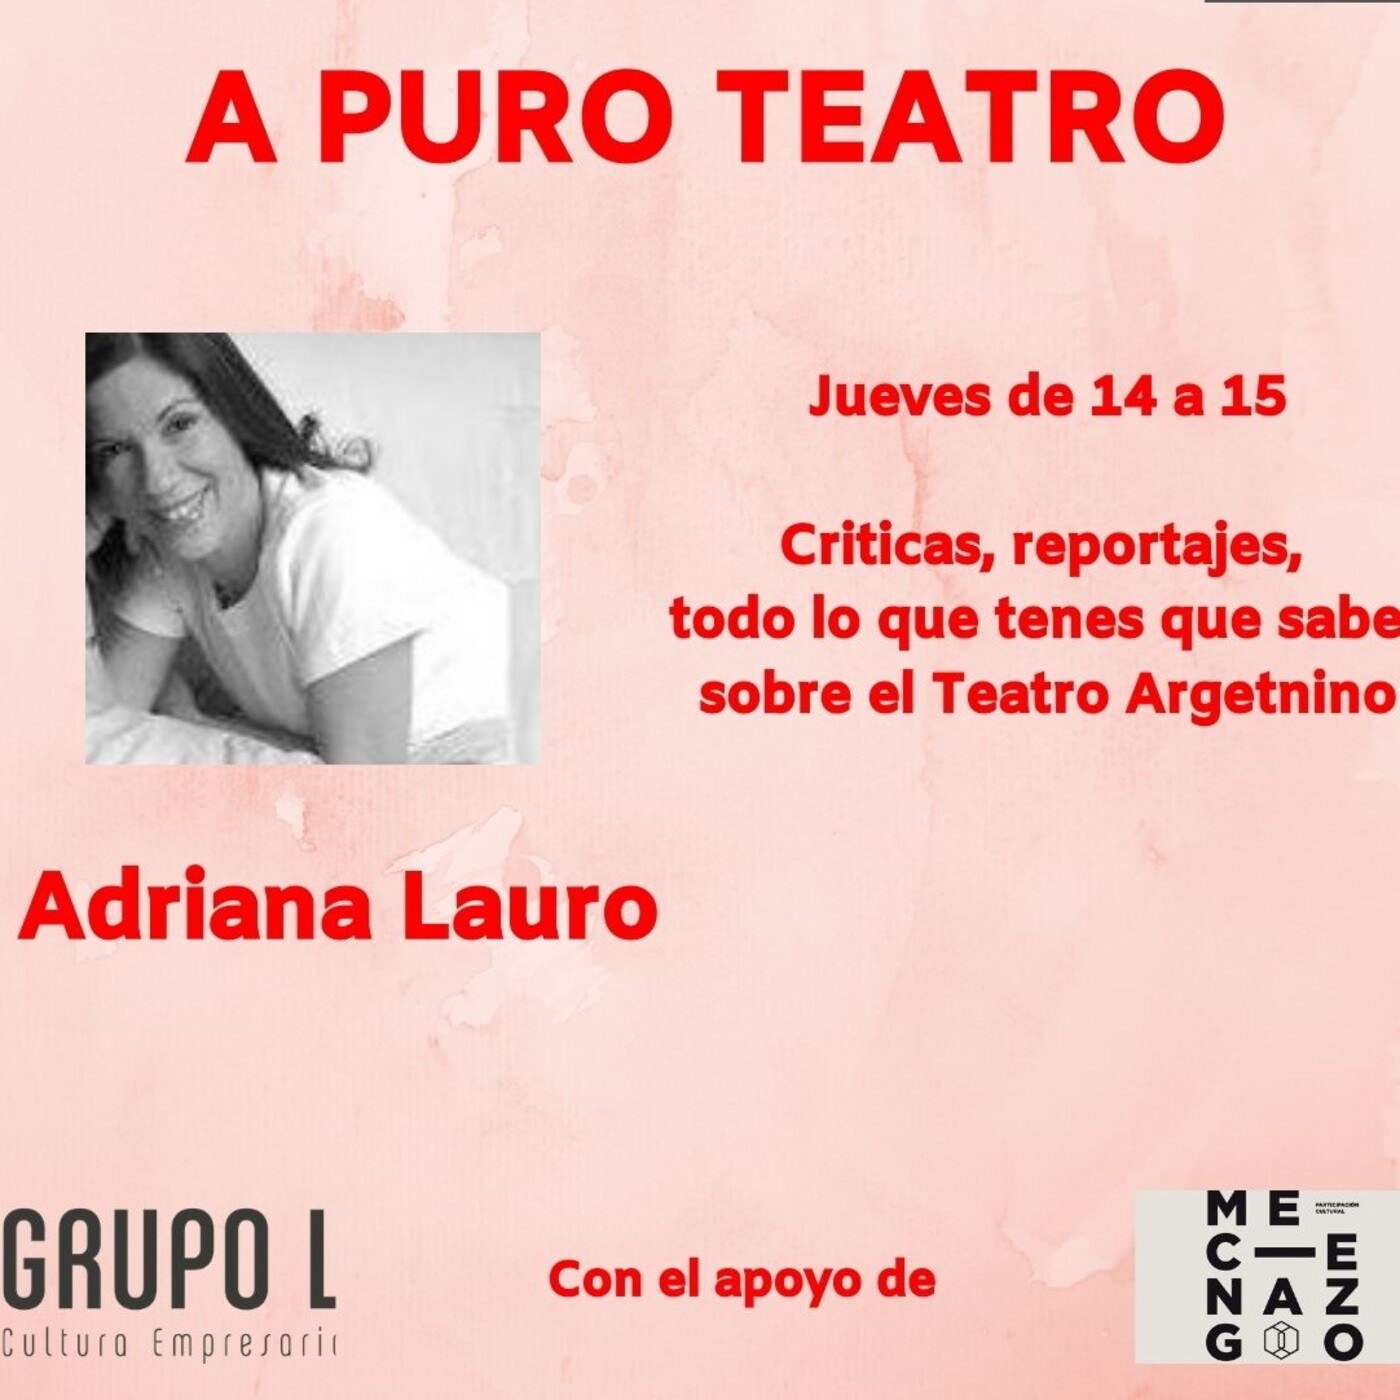 A Puro Teatro 06.10.2022 - Adriana Lauro